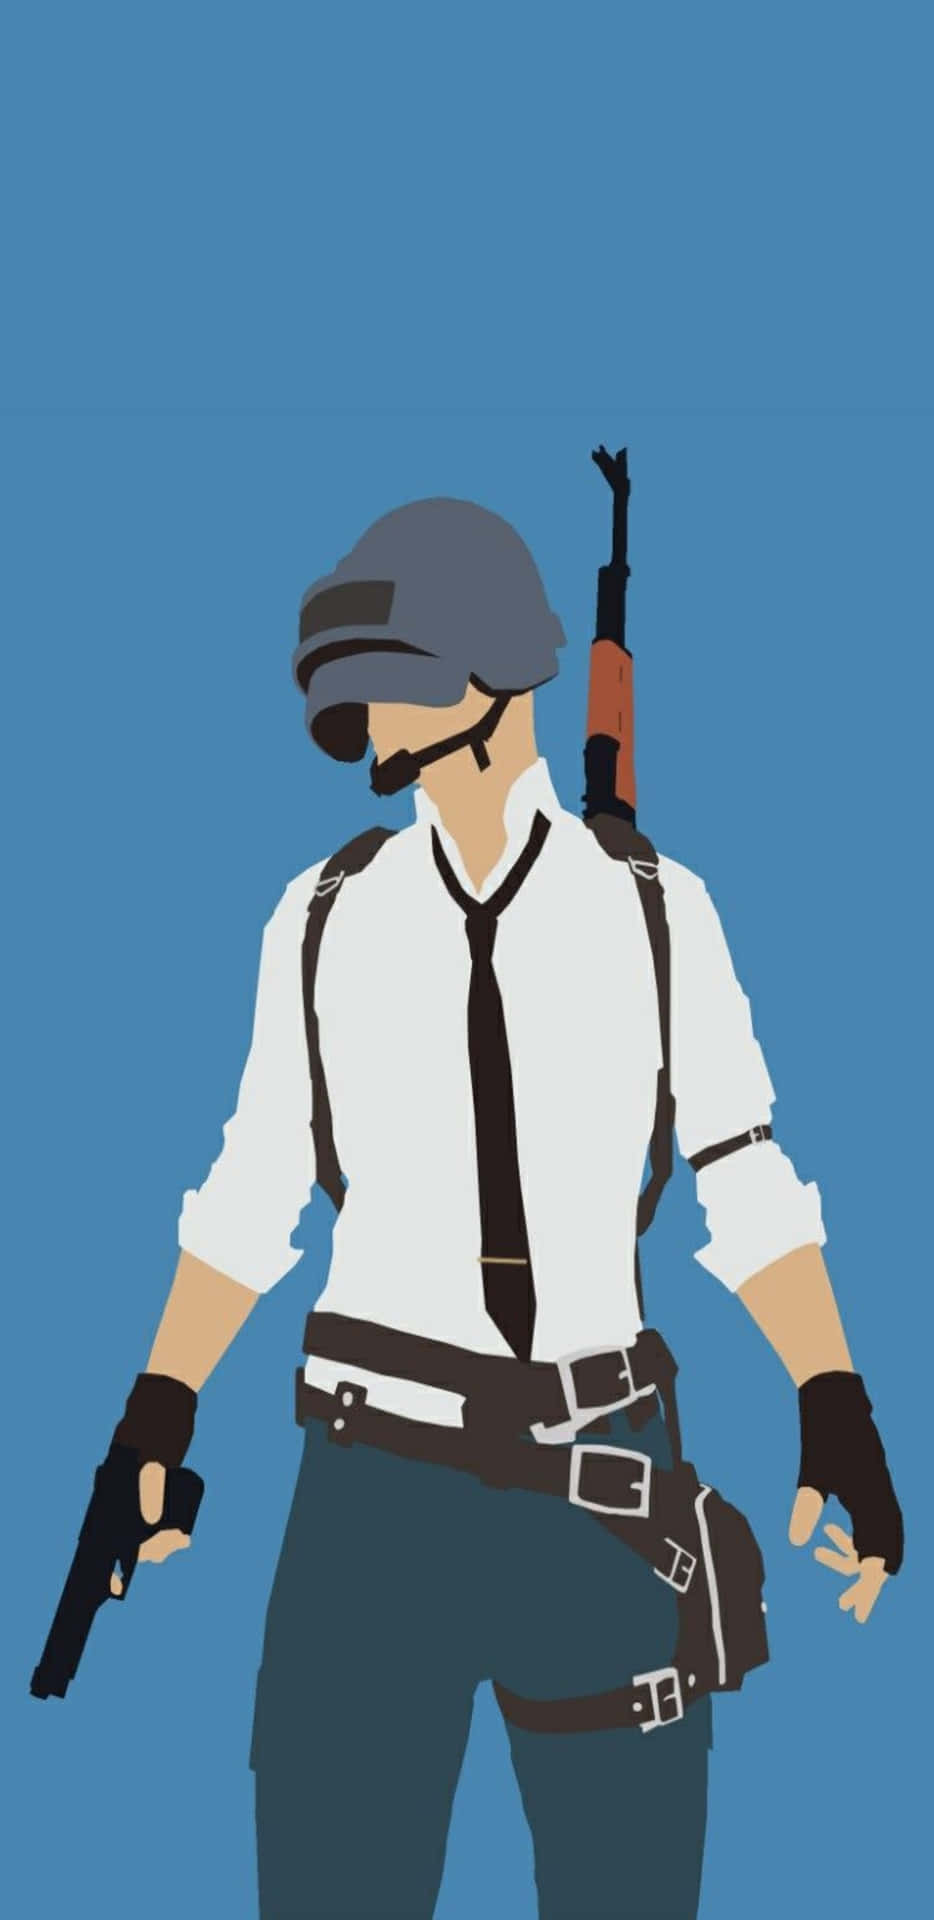 Pixel3xl Playerunknown's Battlegrounds Hintergrund Gemälde Eines Bewaffneten Mannes